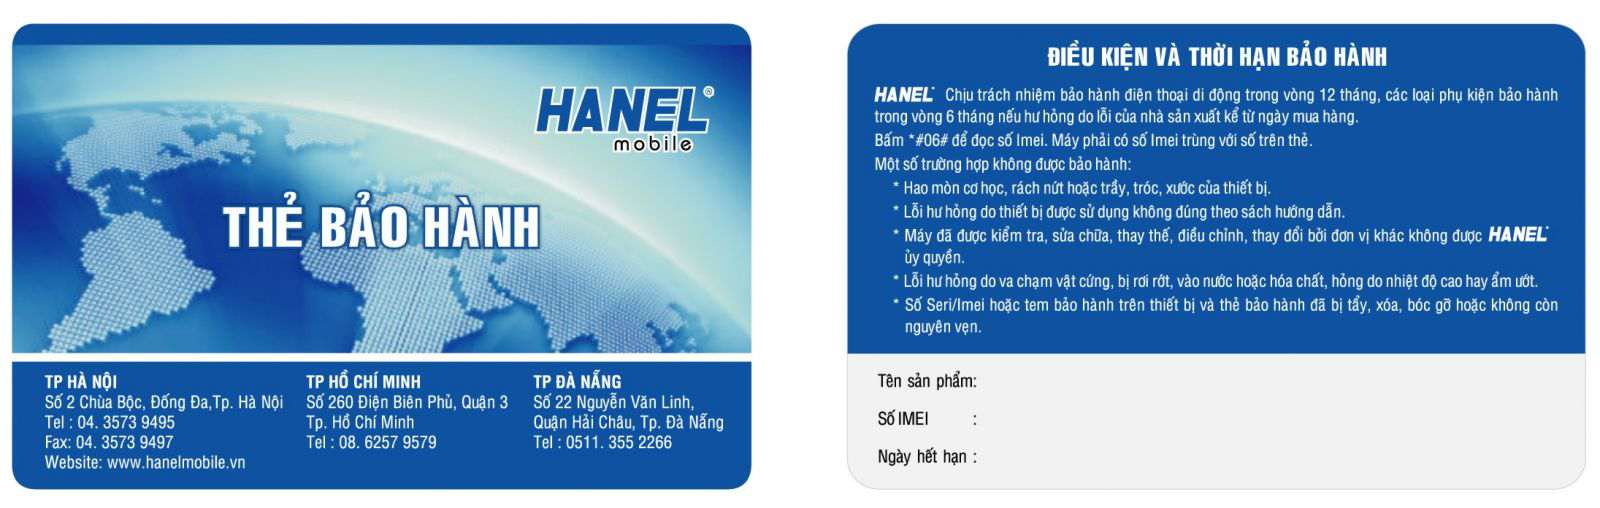 thẻ bảo hành, the bao hanh, dịch vụ in thẻ 2 smartid.vn